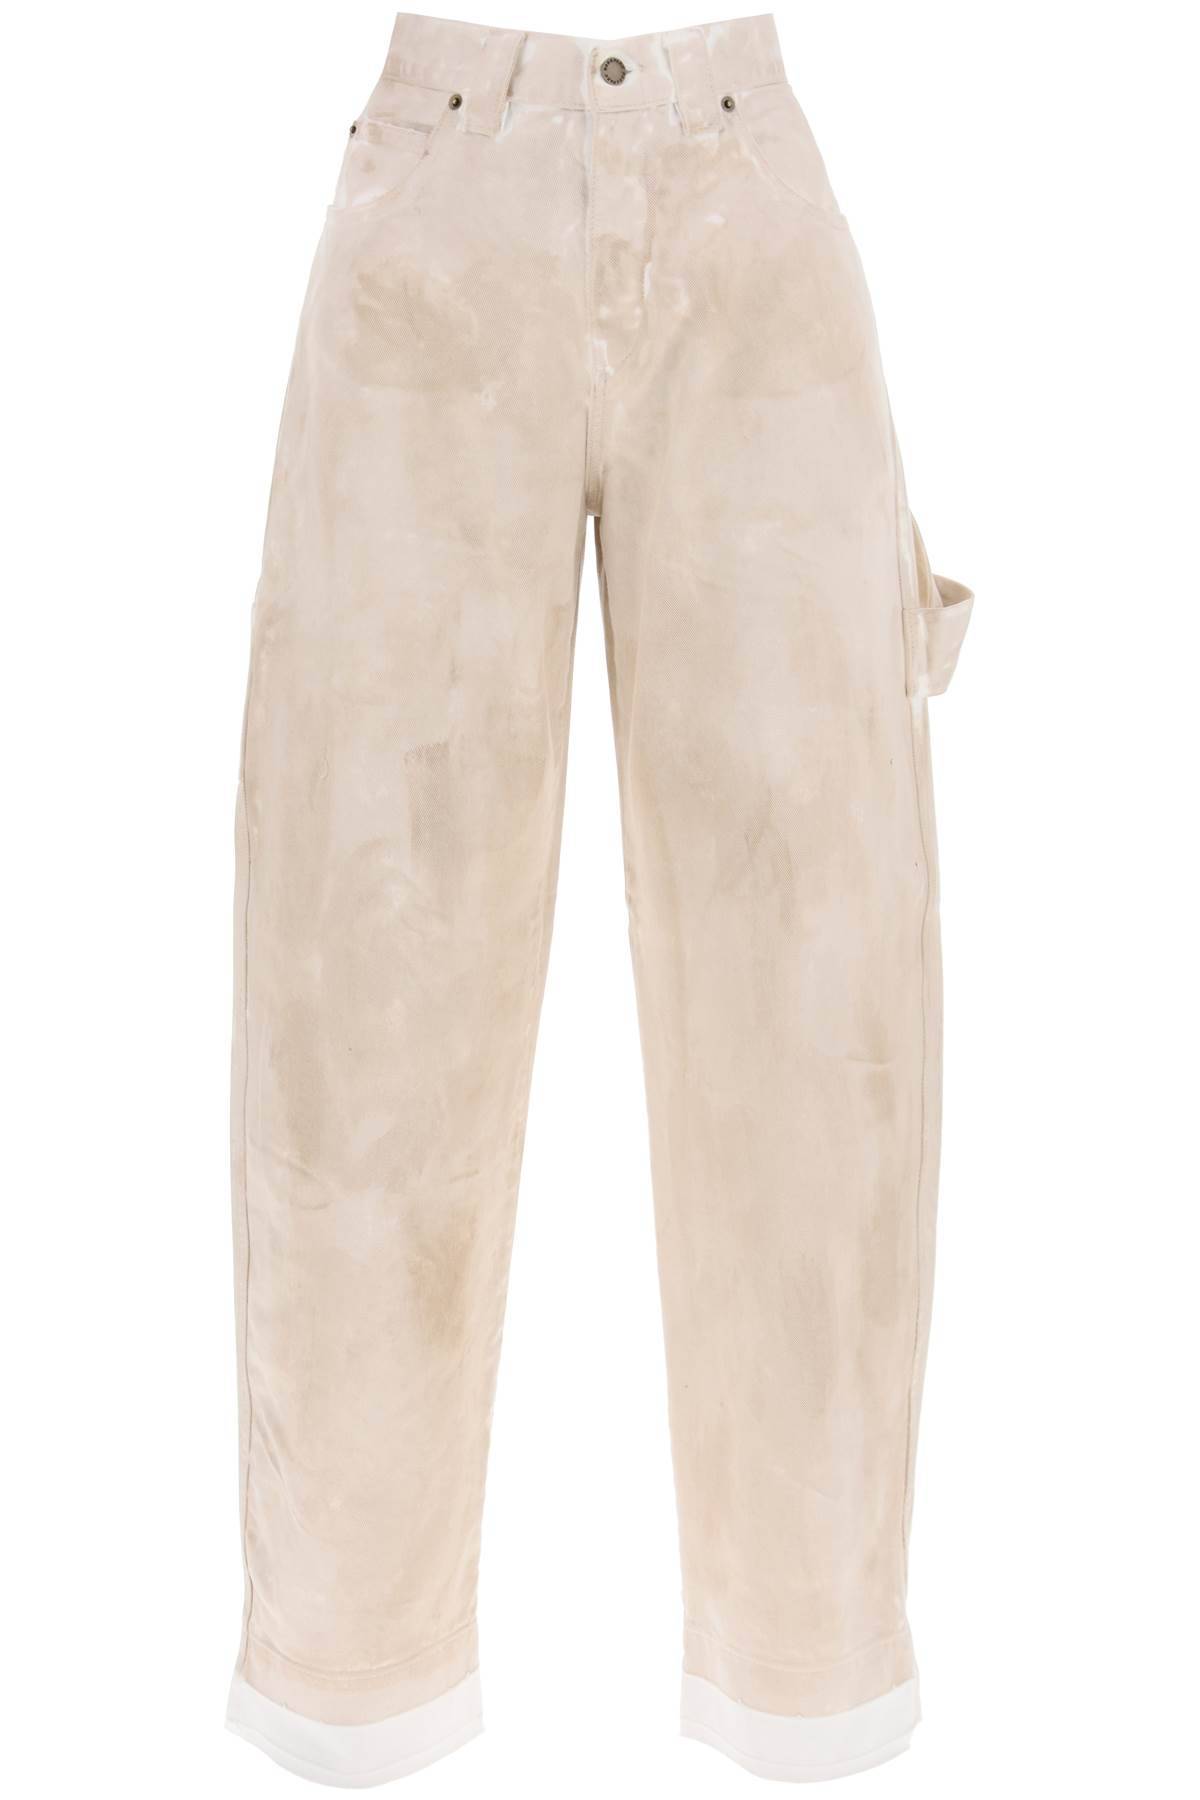 DARKPARK DARKPARK audrey marble-effect cargo jeans